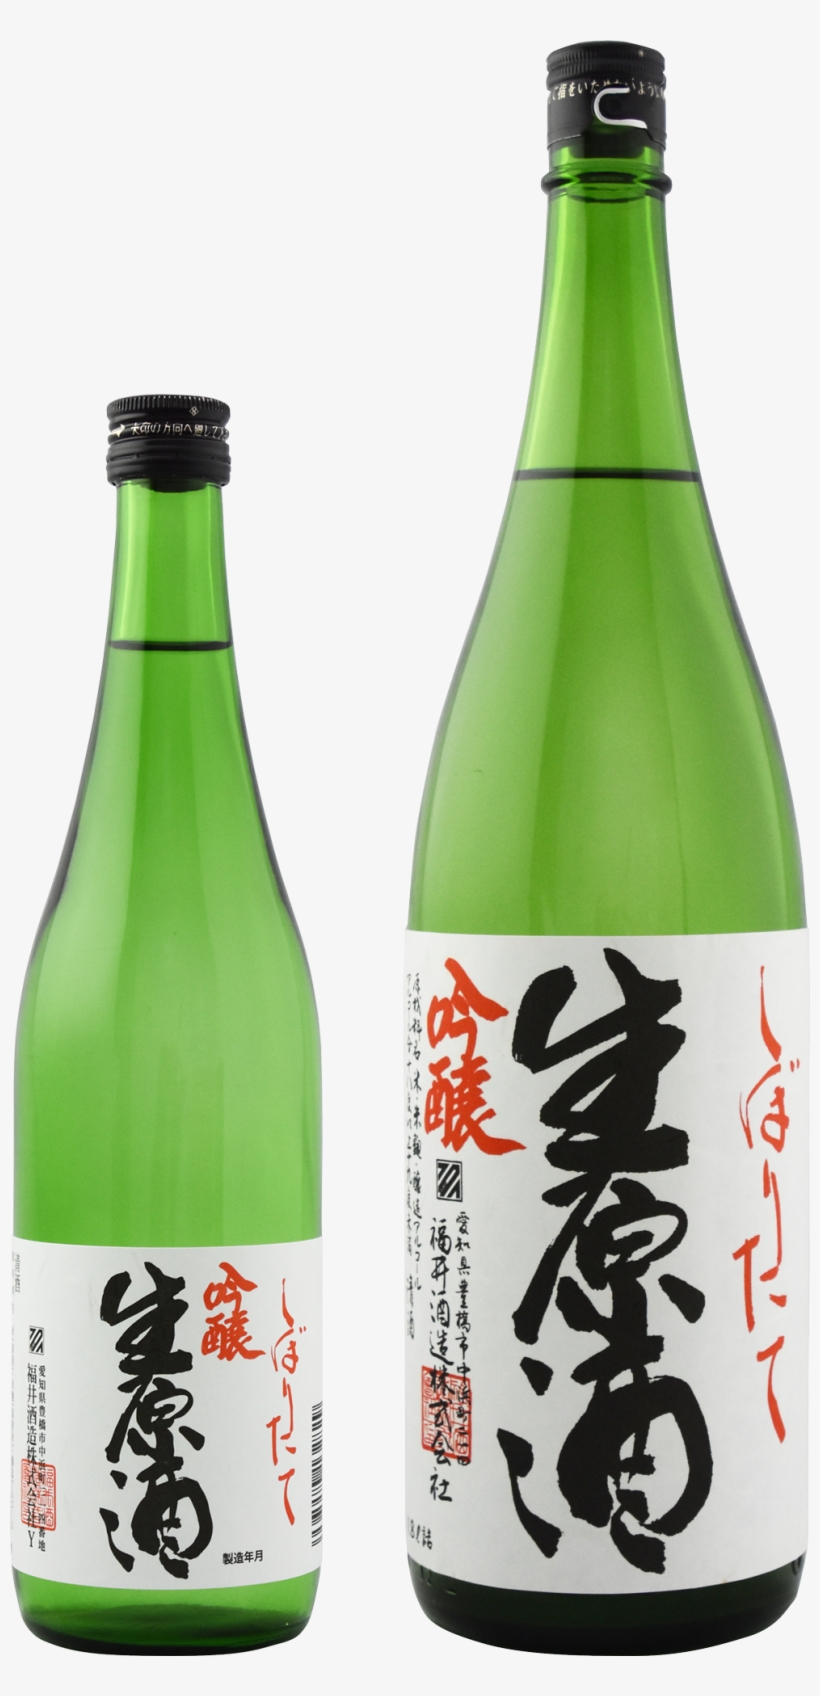 Fresh Unpasteurized Sake - Sake, transparent png #3419602